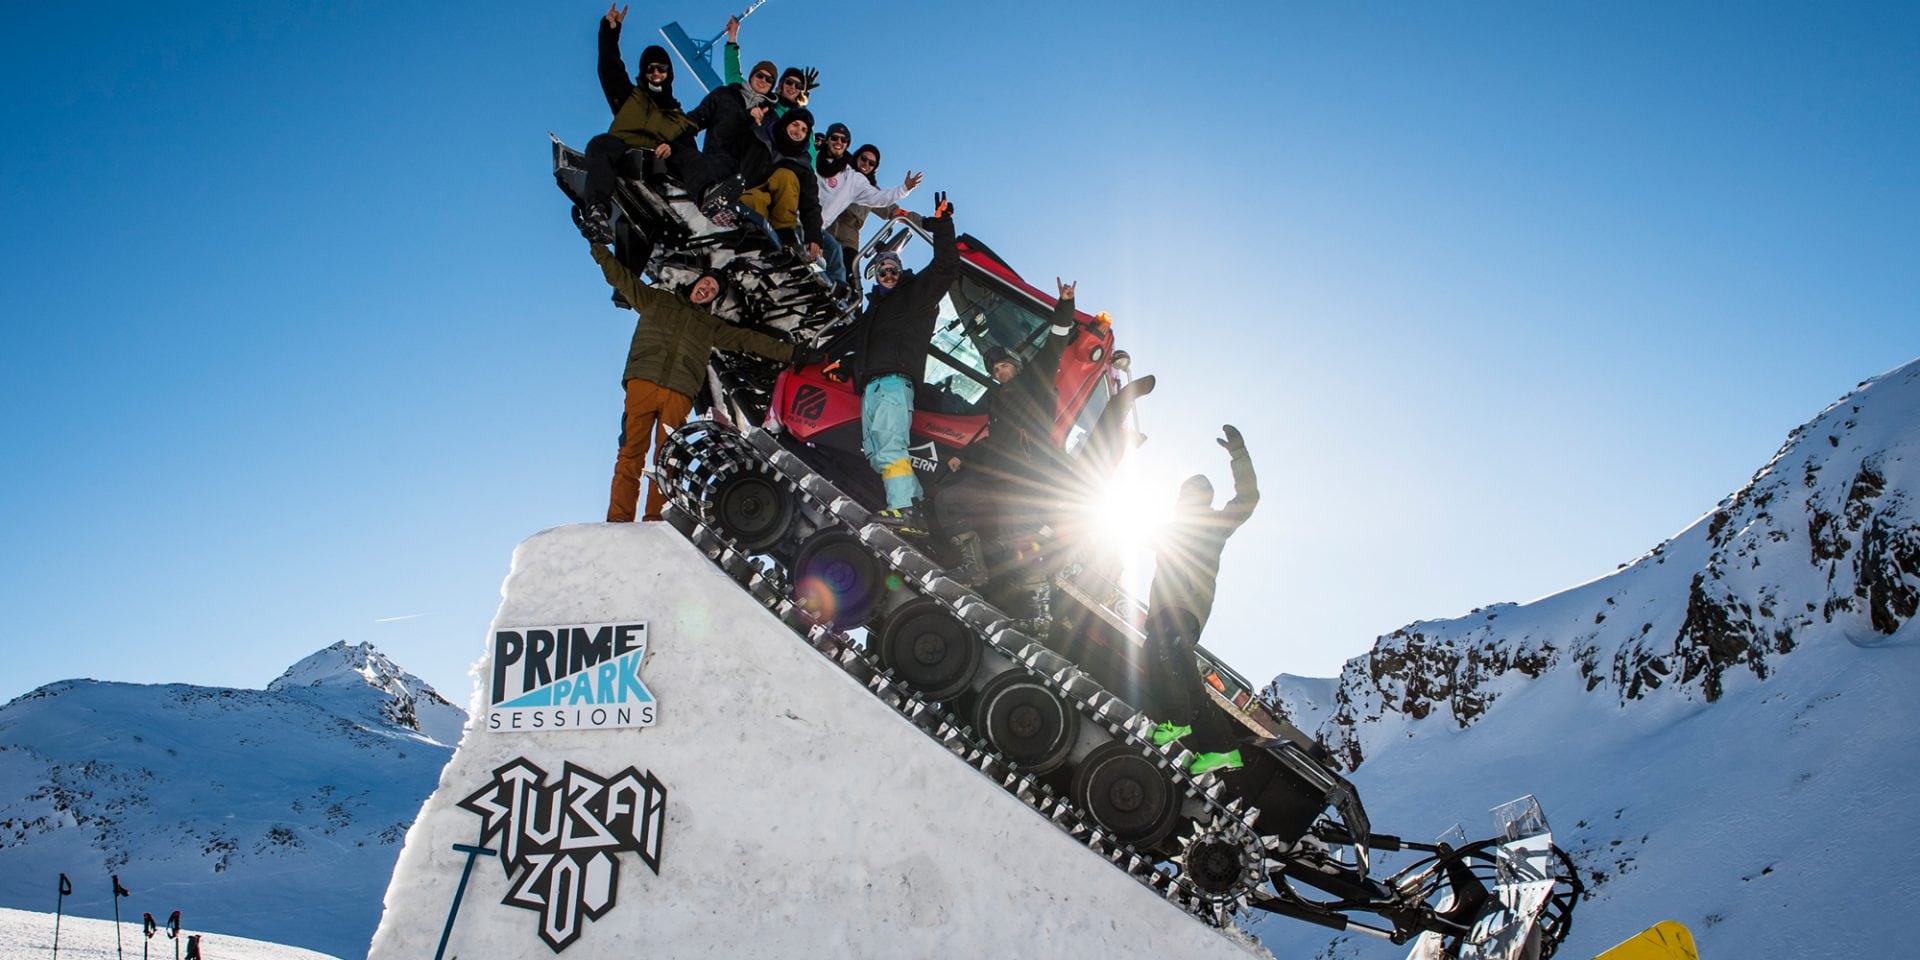 Zespół organizujący imprezę Prime Park Sessions w Freestyle Park na lodowcu Stubai